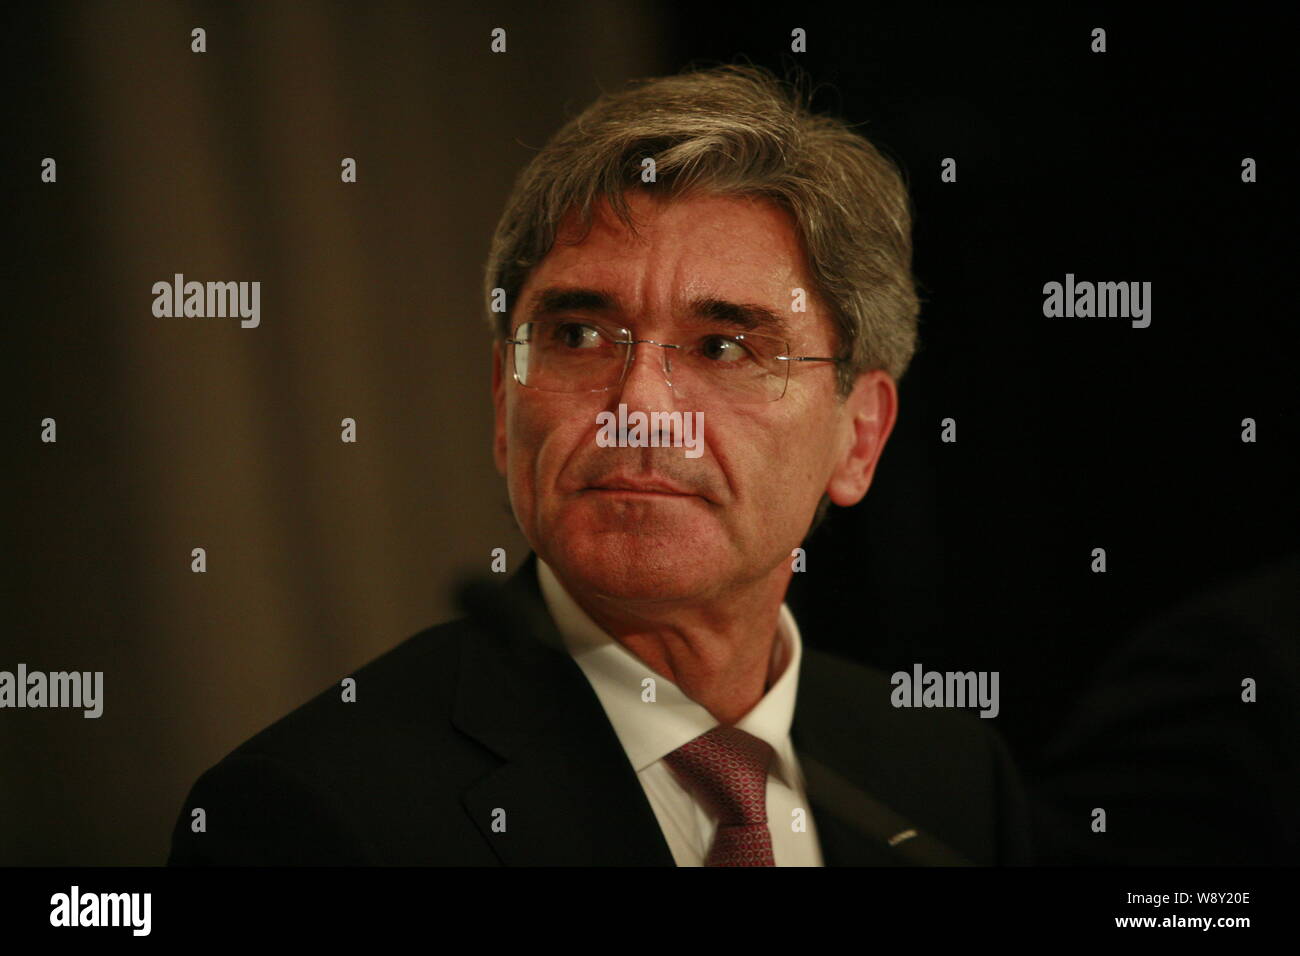 Joe Kaeser, directeur général de Siemens AG, est photographié au cours d'une conférence de presse à Beijing, Chine, 9 juillet 2014. Banque D'Images